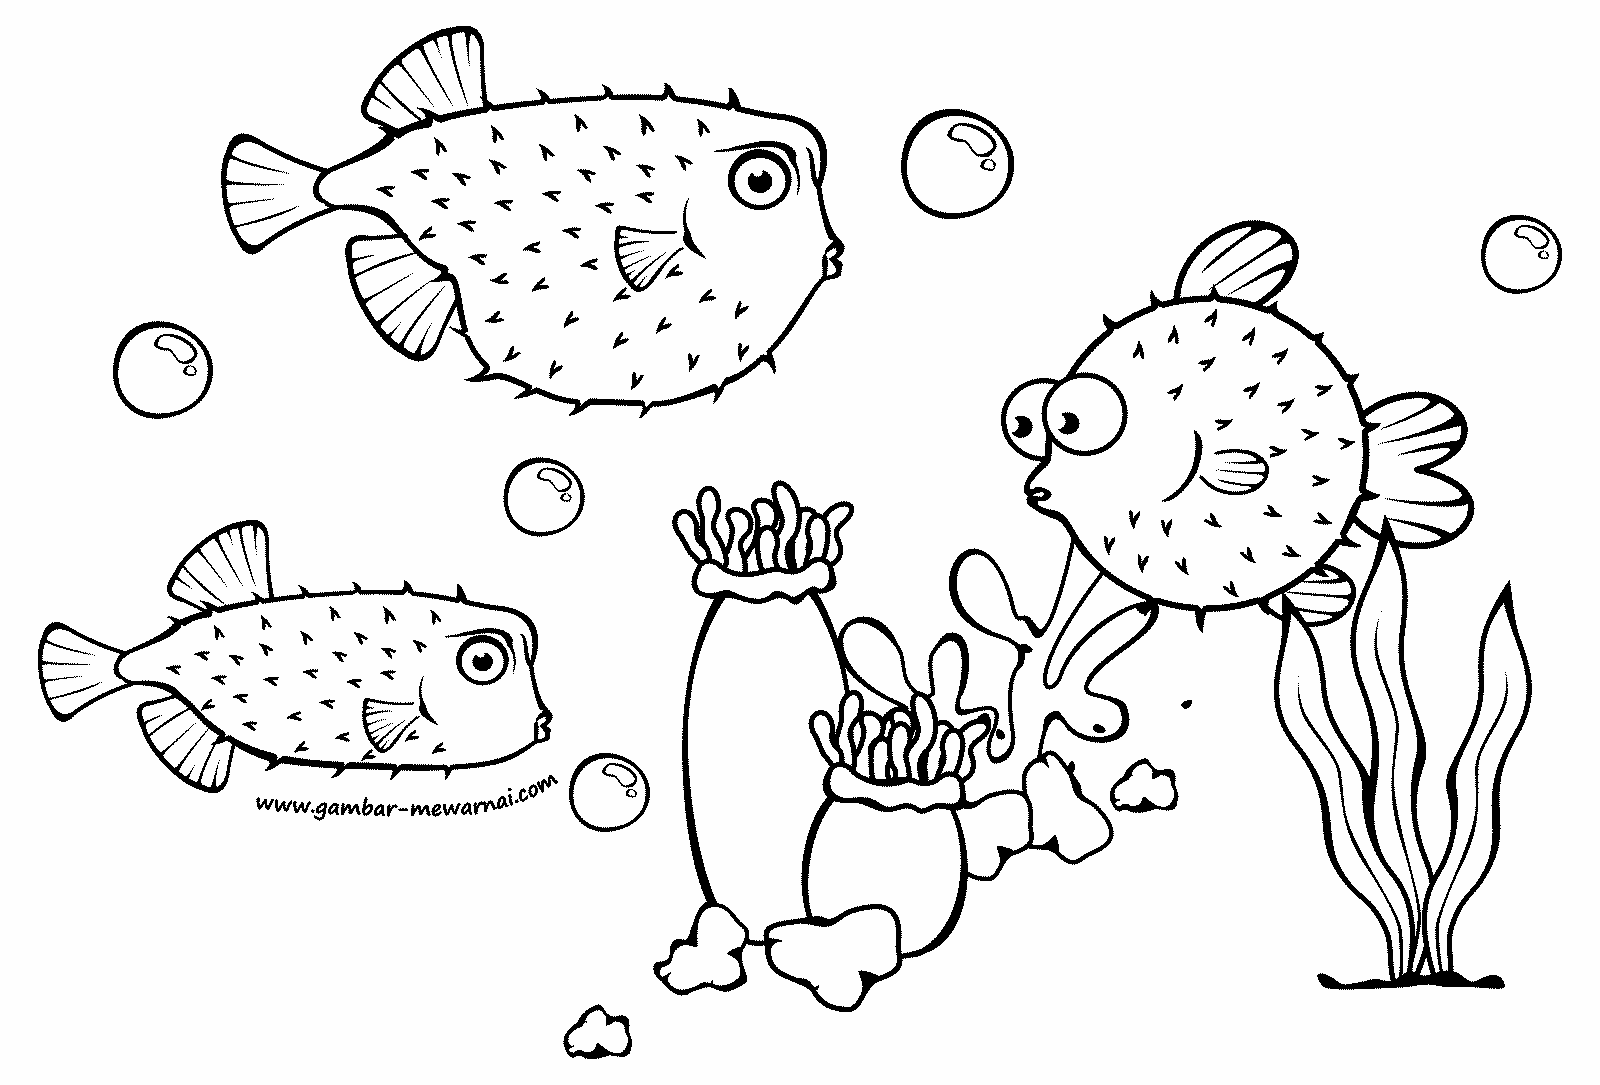 Gambar Mewarnai Ikan Buntal - Contoh Gambar Mewarnai